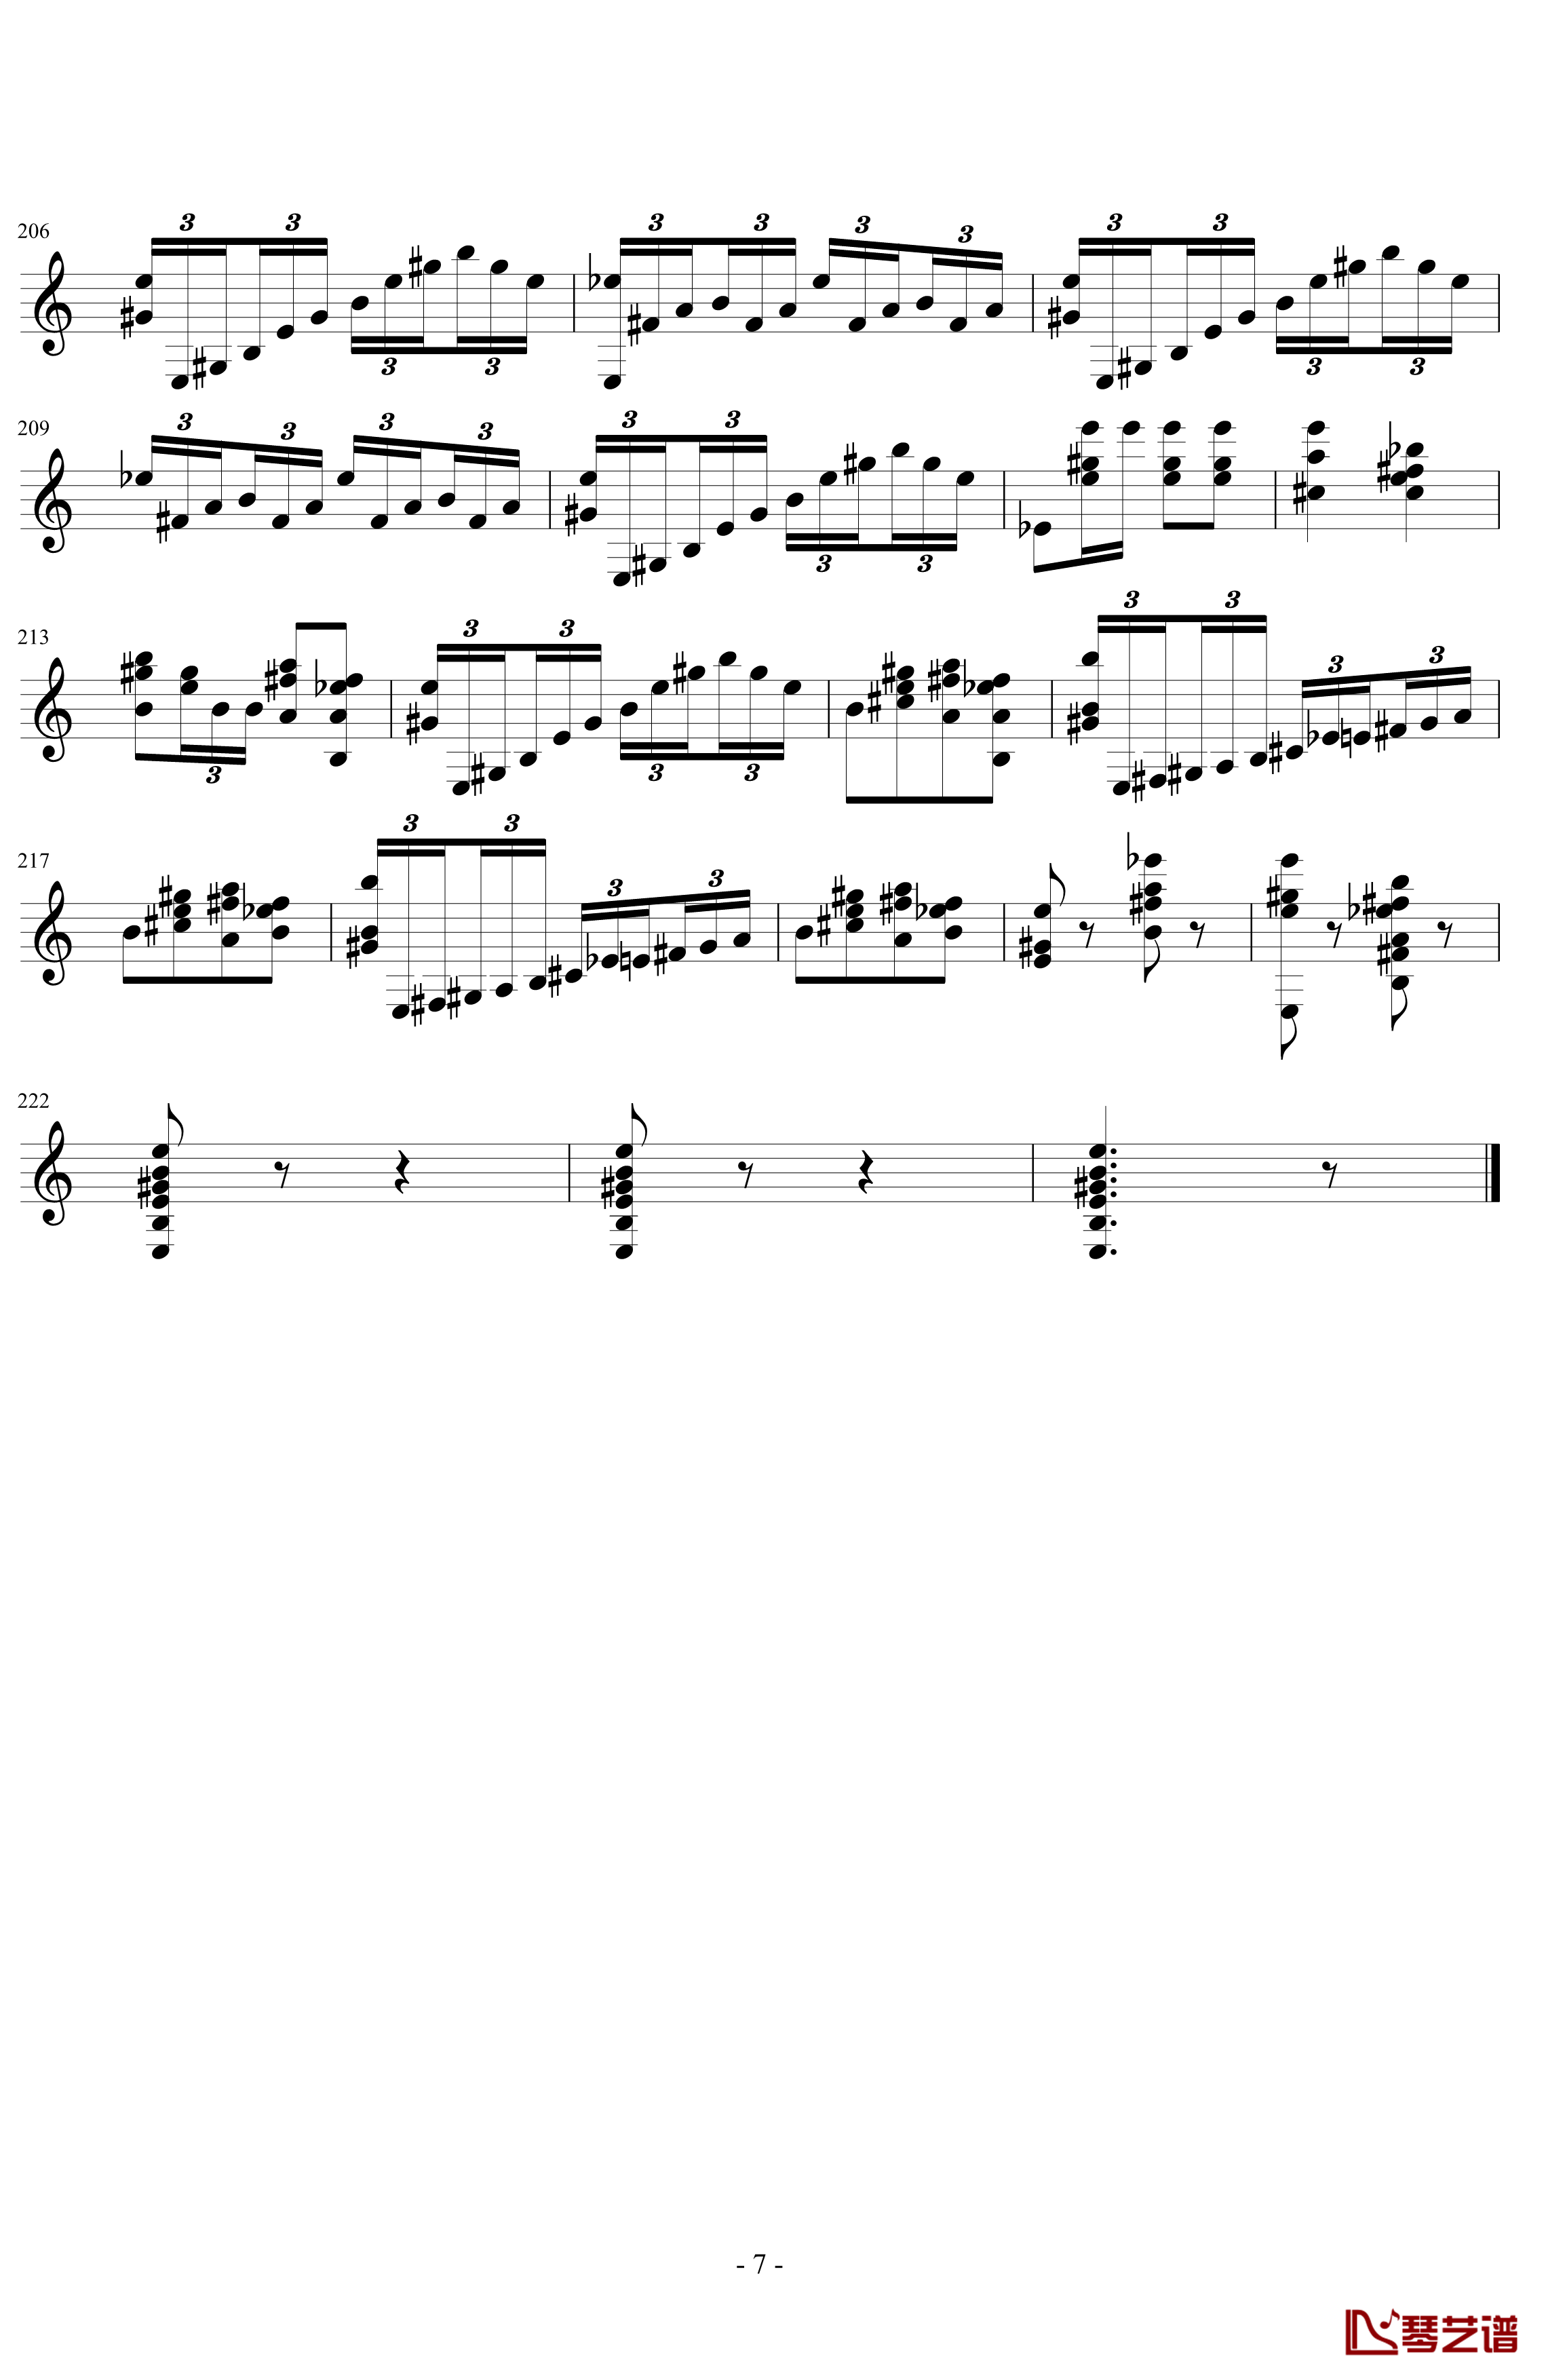 魔笛主题变奏曲钢琴谱-单手-索尔7